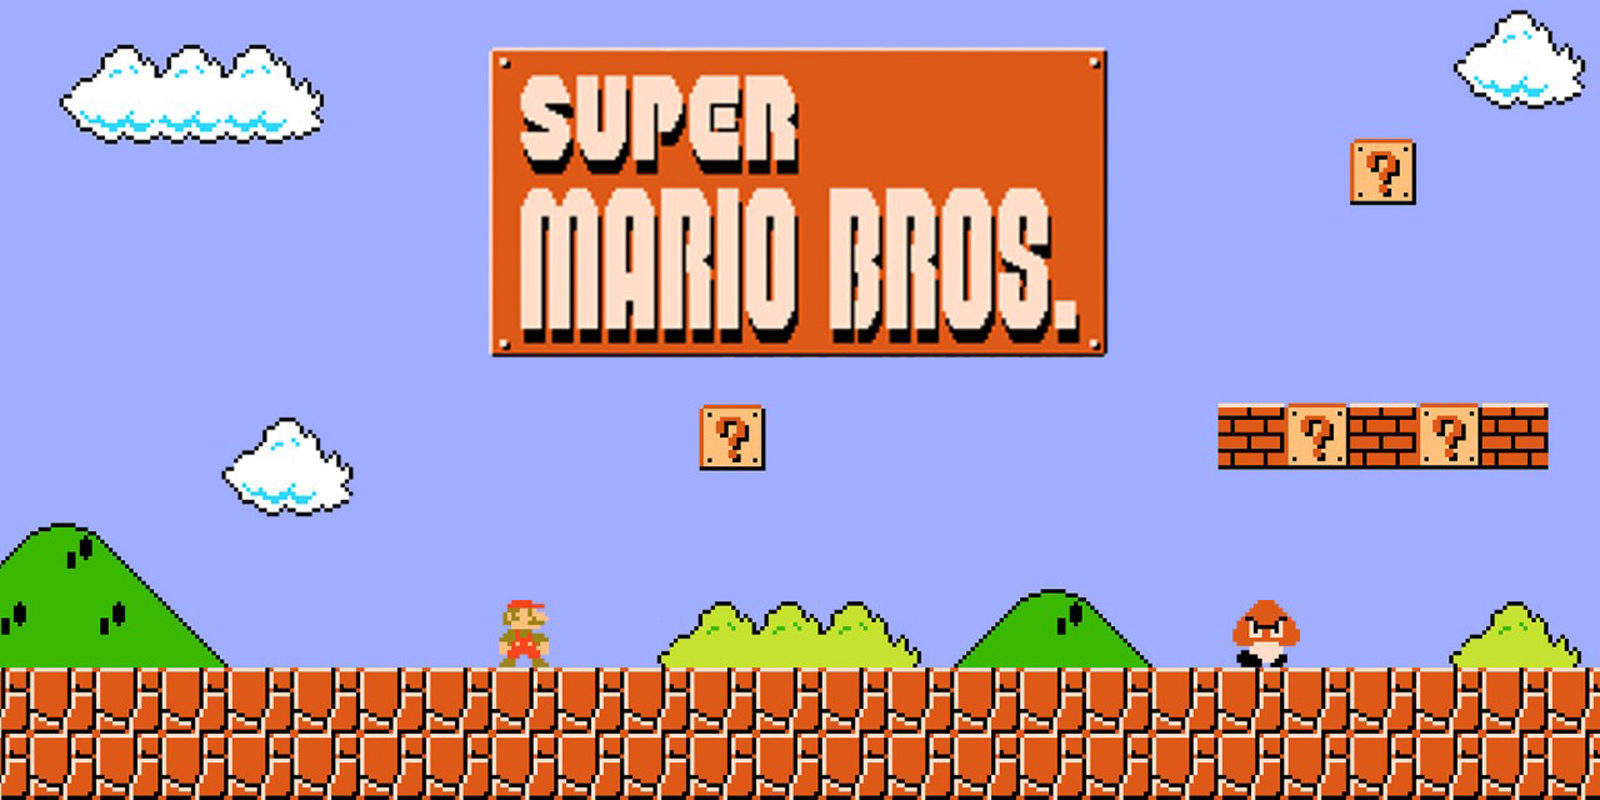 Especial Mario: 'Super Mario Bros.', el juego que te invitaba a mirar con ilusión el futuro